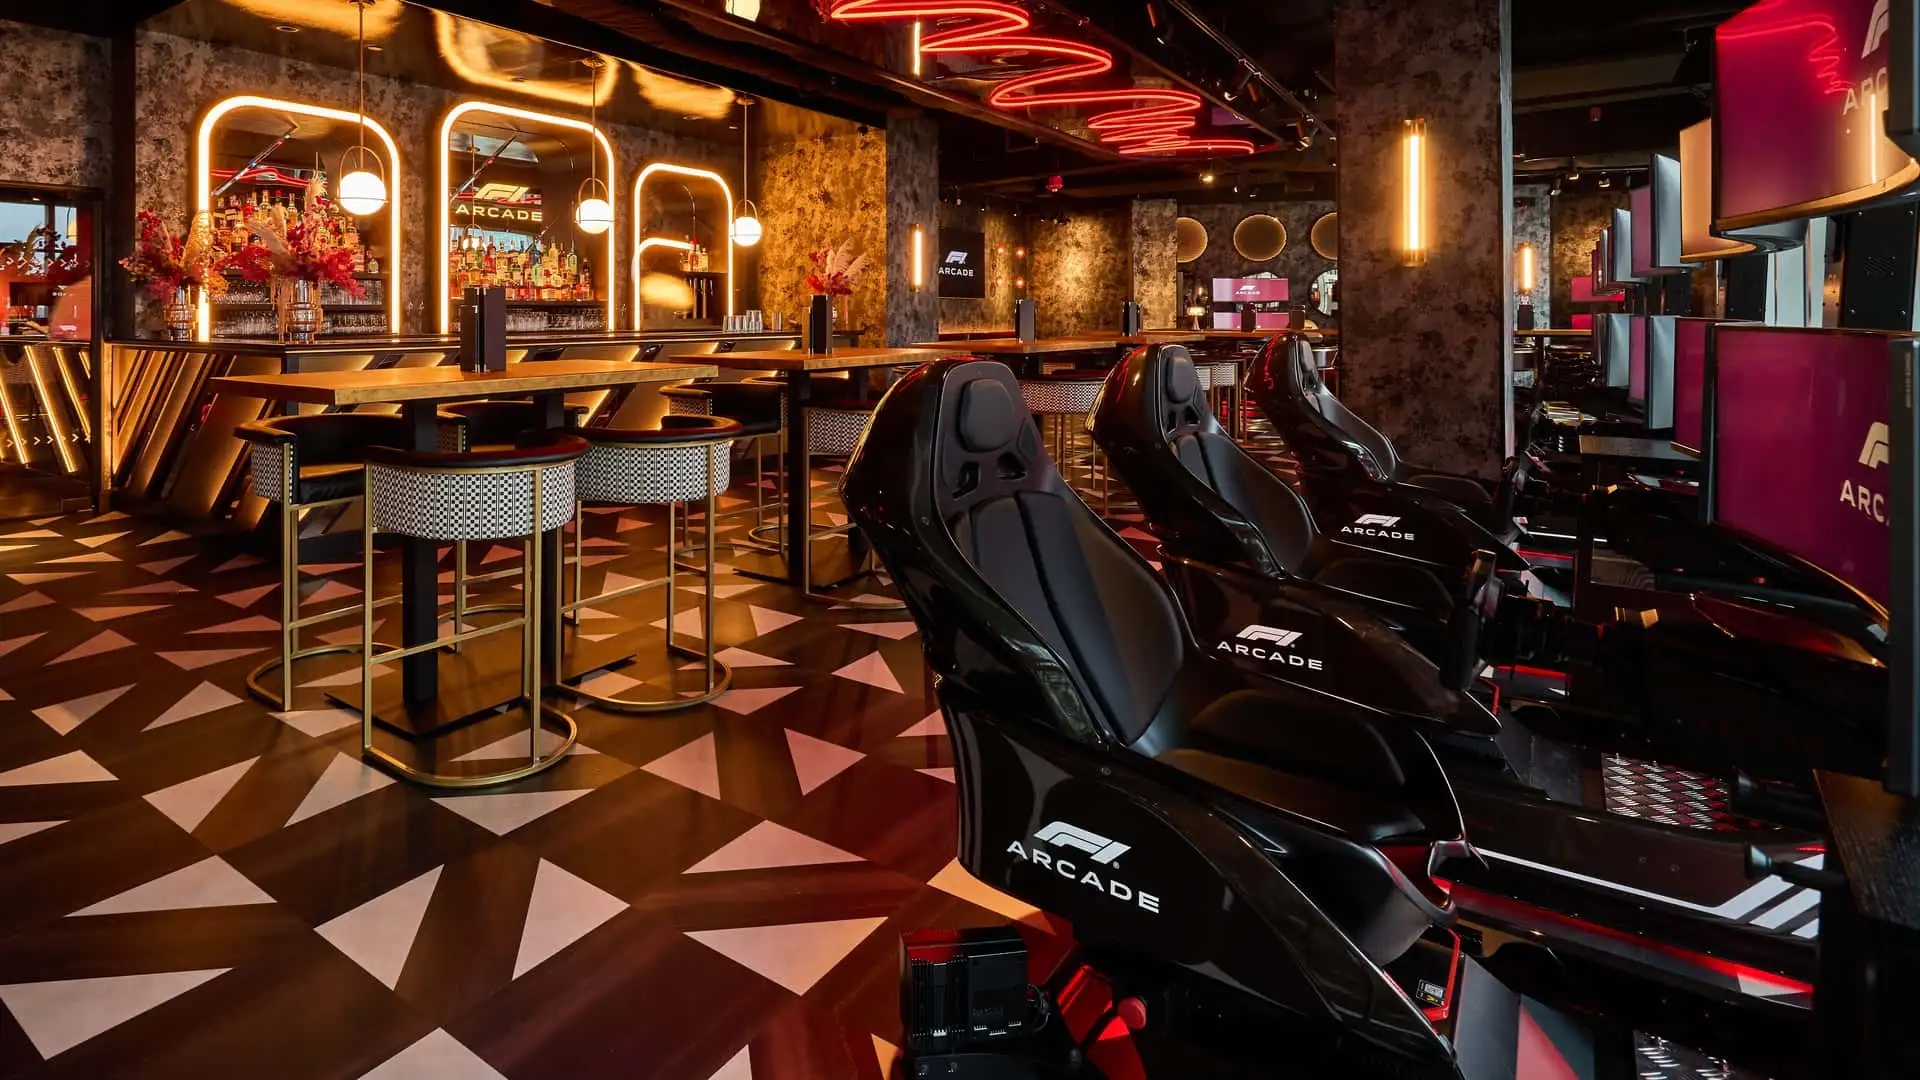 Le restaurant F1 Arcade a ouvert ses portes à Boston. Il propose des plats délicieux et un tour au volant d'une voiture de Formule 1.